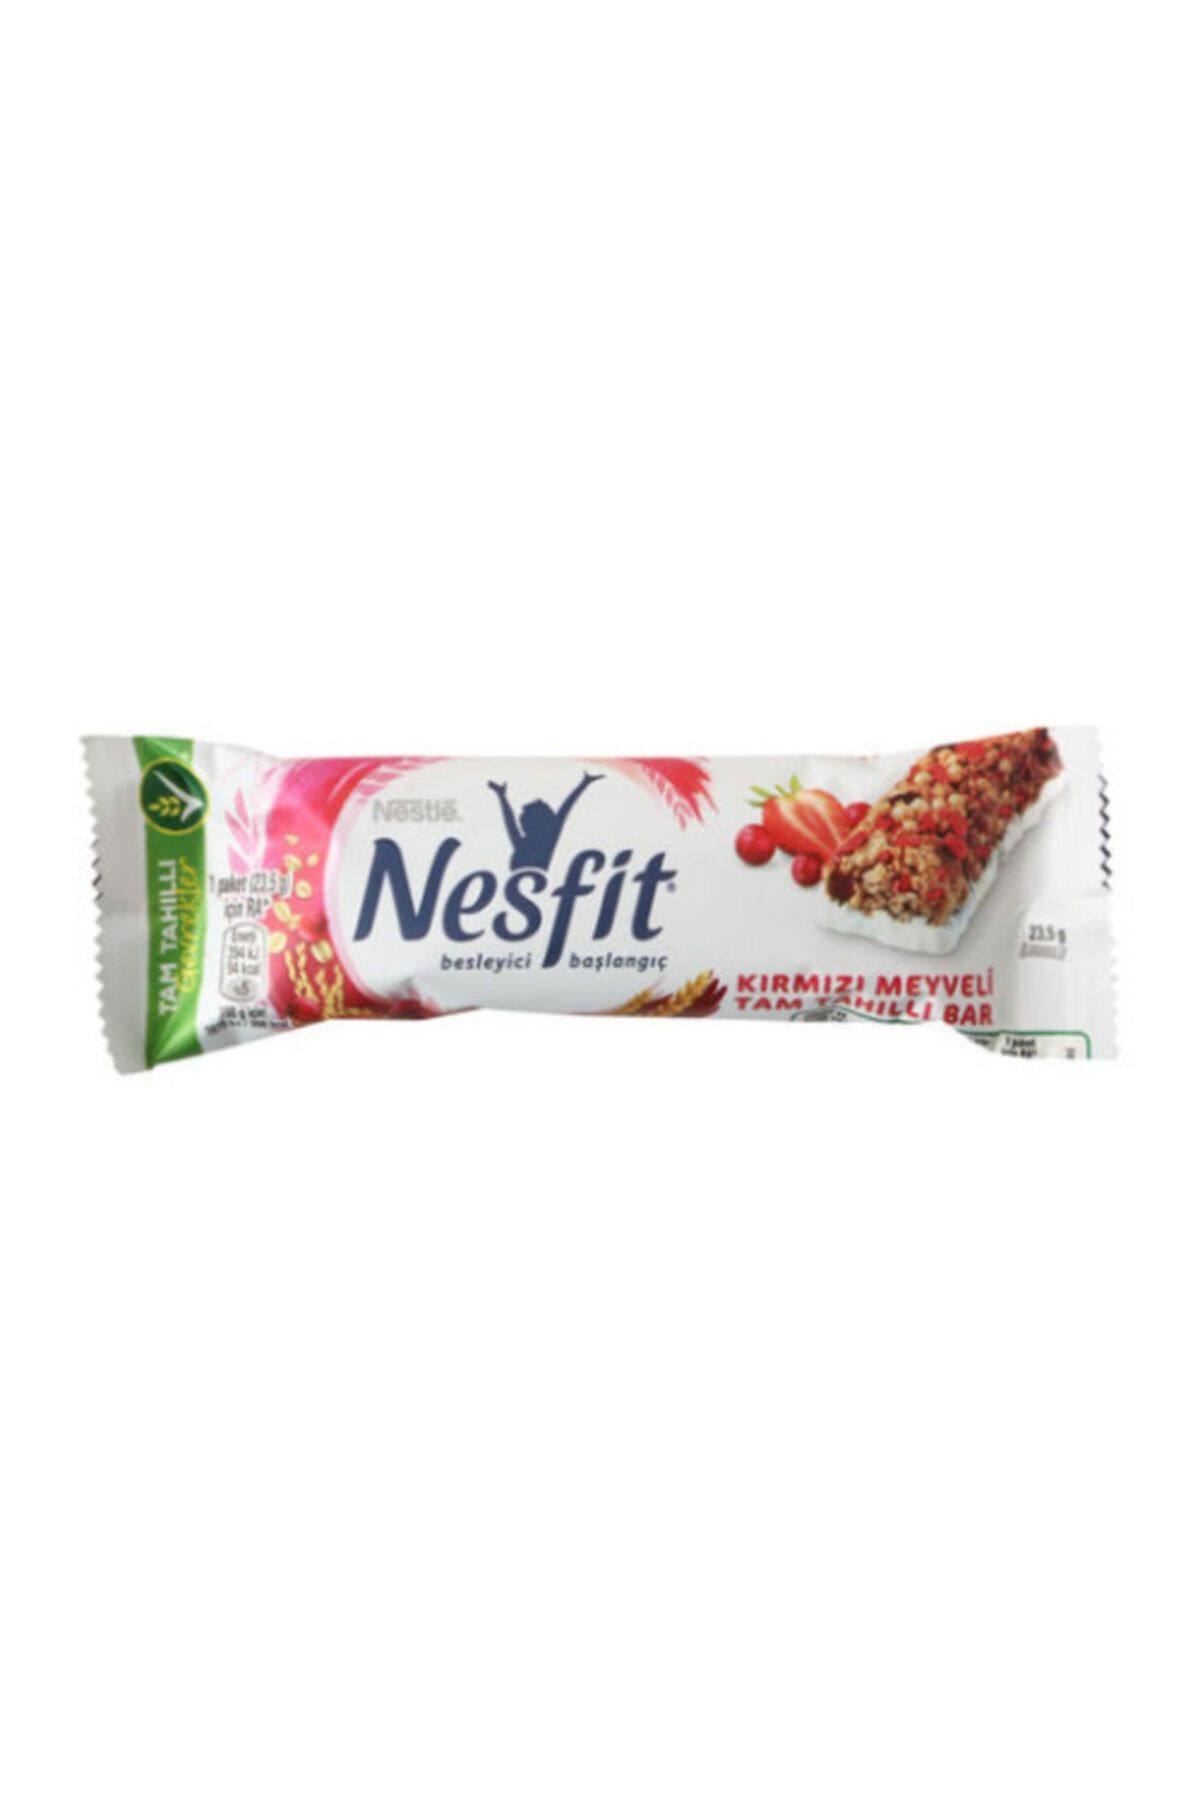 Nestle Nesfit Kırmızı Meyveli Tam Tahıllı Bar 94 Kalori Besleyici Başlangıç X16